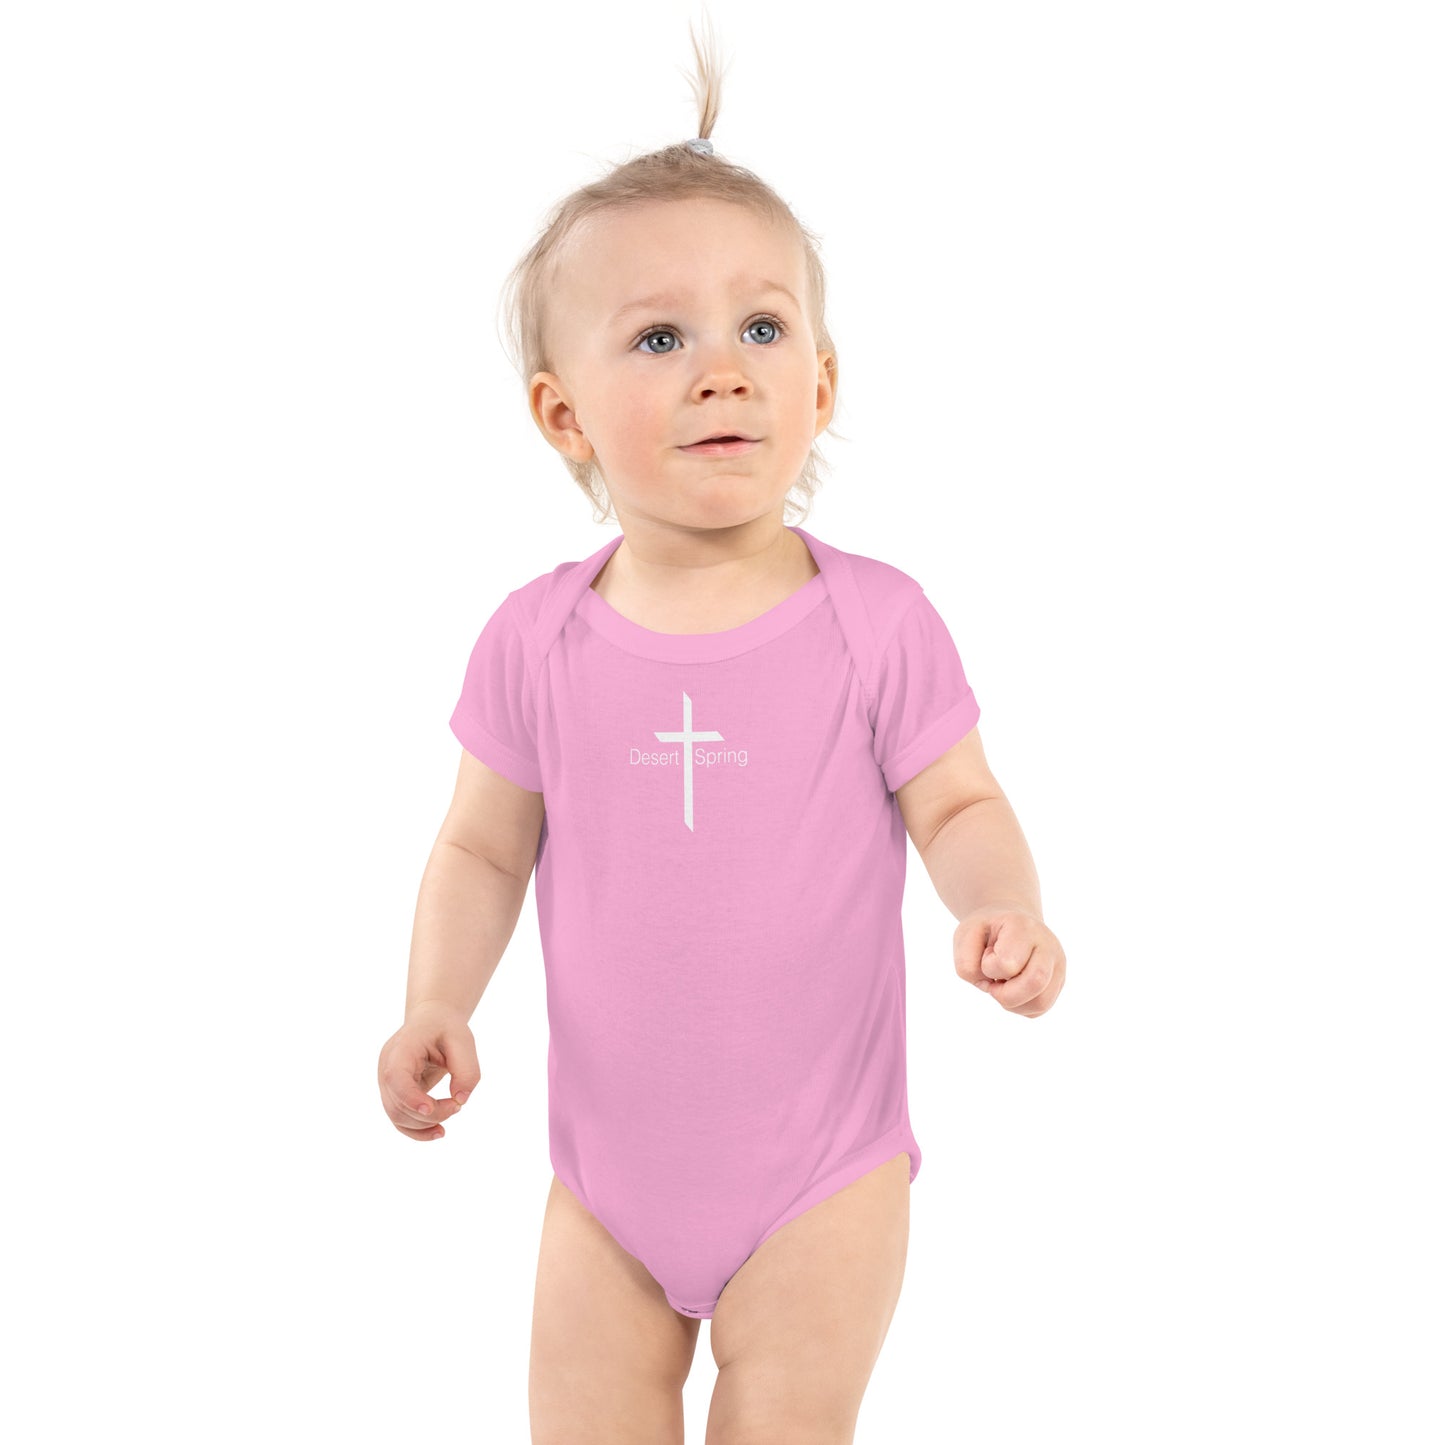 Desert Spring Cross Infant Bodysuit